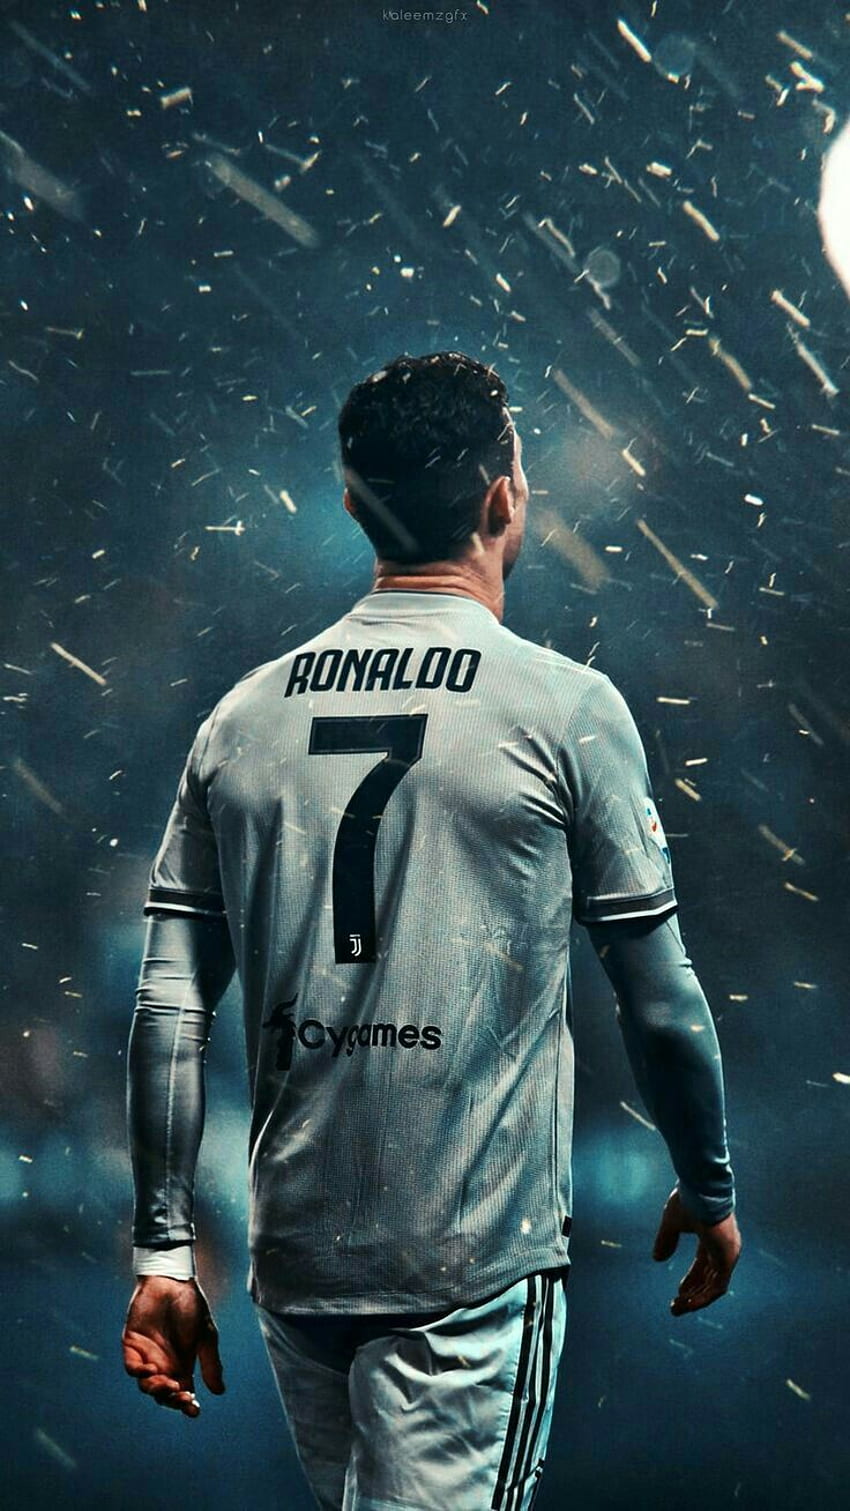 Cristiano Ronaldo: Là một trong những cầu thủ đẳng cấp nhất thế giới, Cristiano Ronaldo sở hữu một tài năng và sức mạnh chưa từng thấy. Khác biệt với những đối thủ, anh luôn bày tỏ phong cách và thái độ cầu thủ thực thụ. Hãy thưởng thức hình ảnh của CR7 để cảm nhận cảm xúc đó.